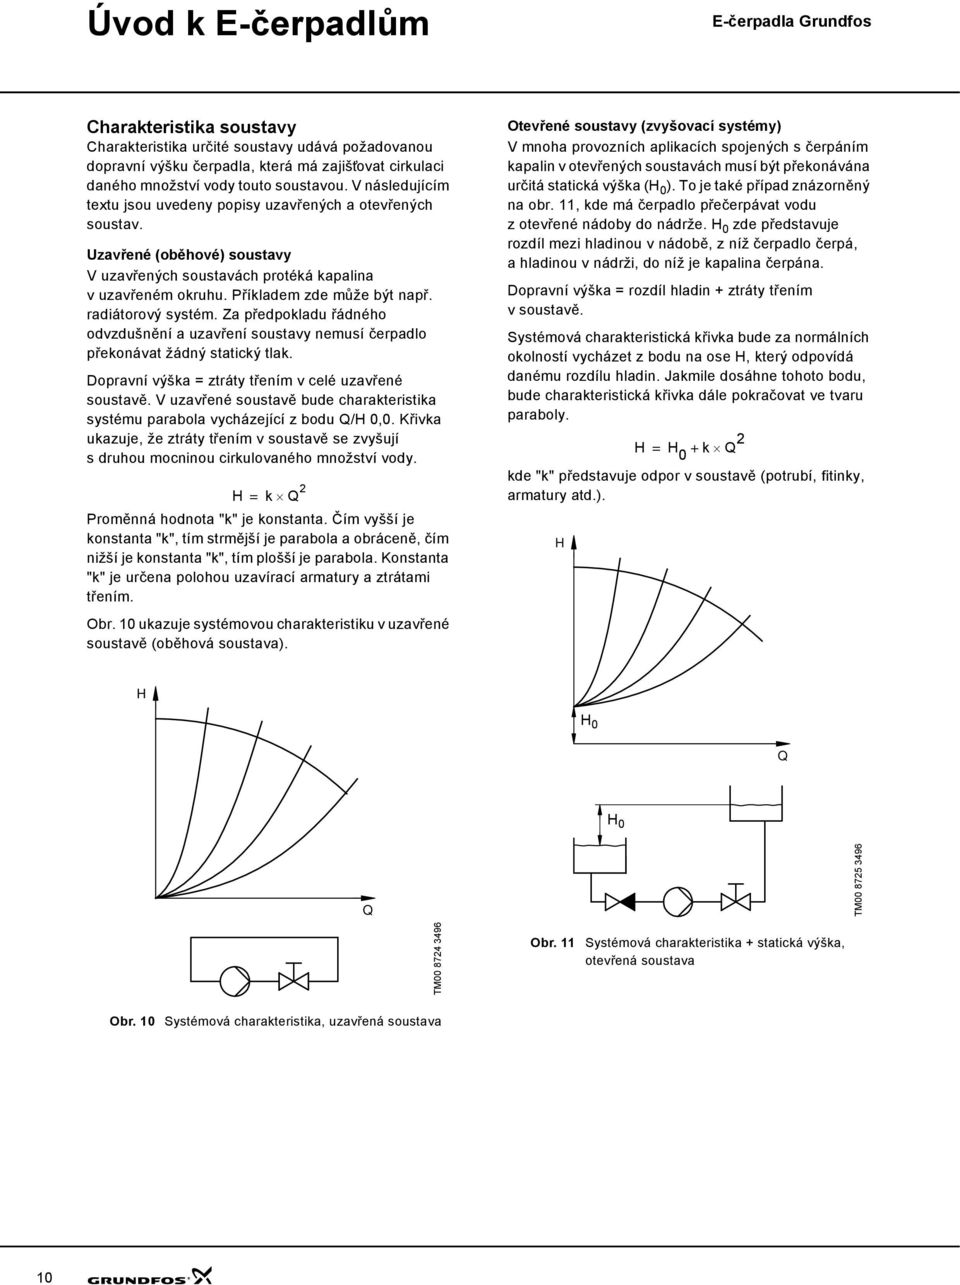 TECHNICKÝ KATALOG GRUNDFOS. E-čerpadla Grundfos. Čerpadla s vestavěným  frekvenčním měničem 50/60 Hz - PDF Free Download